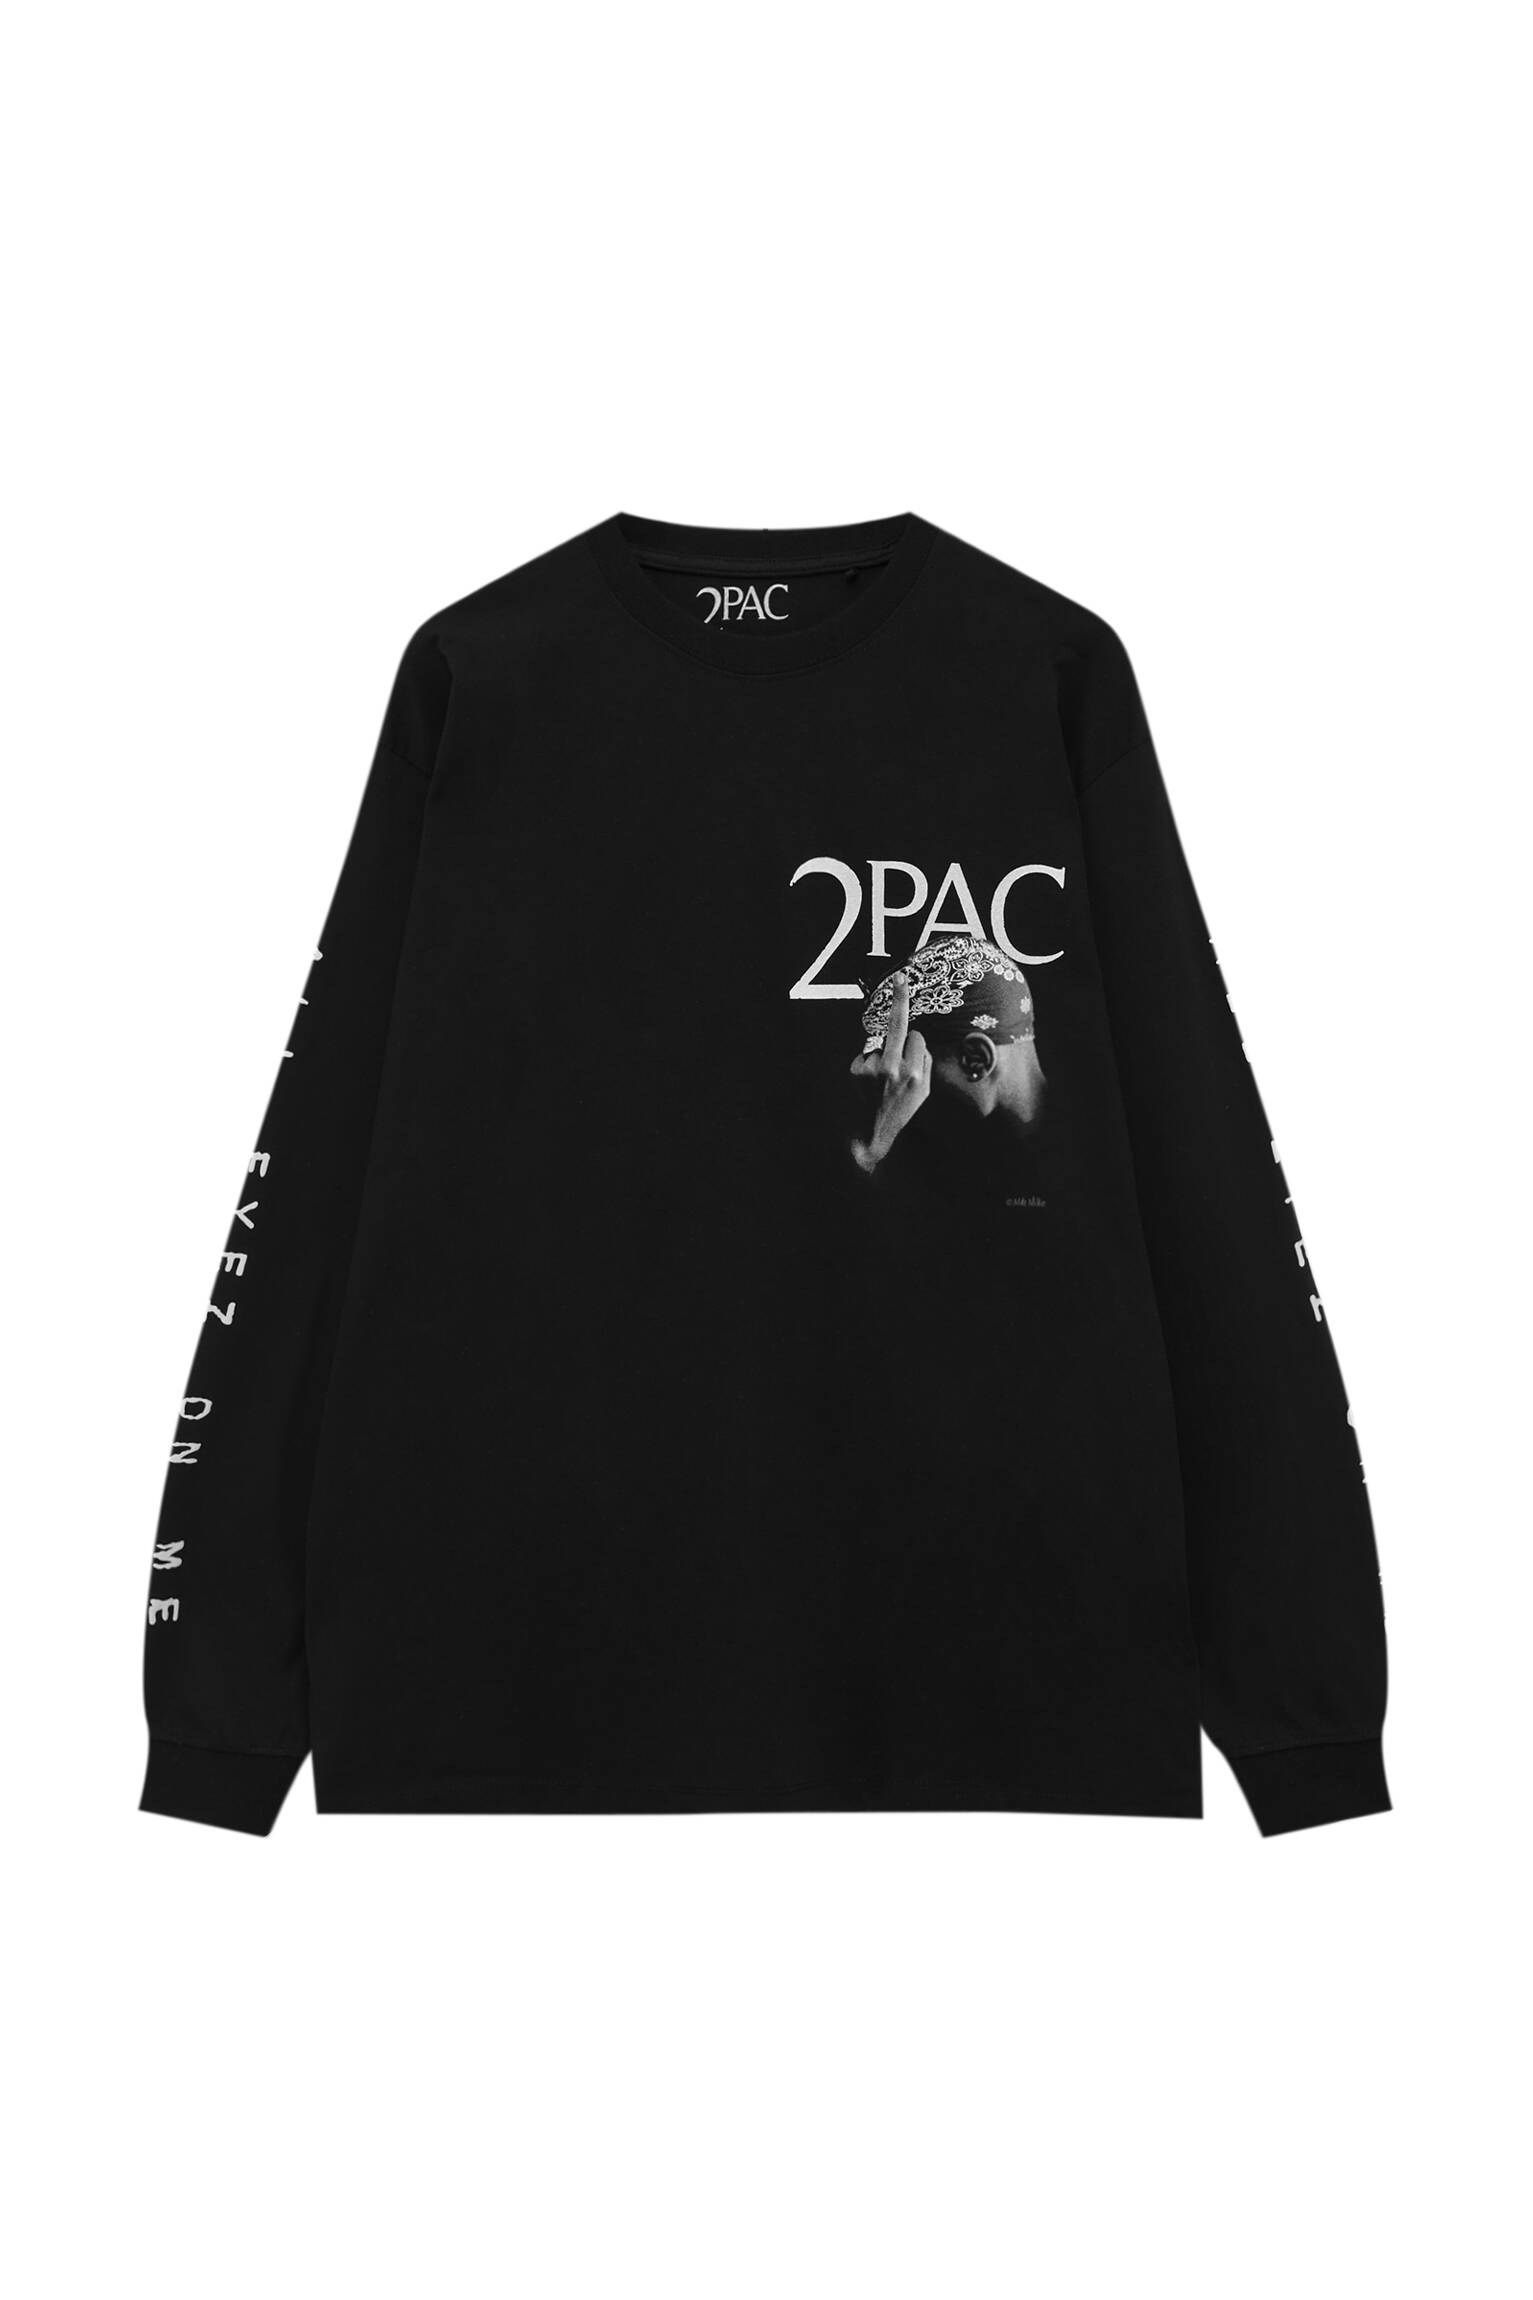 Pull&bear Homme T-shirt à Col Rond Et Manches Longues, Avec Imprimé Et Inscription « all Eyez On Me » De Tupac. Noir M